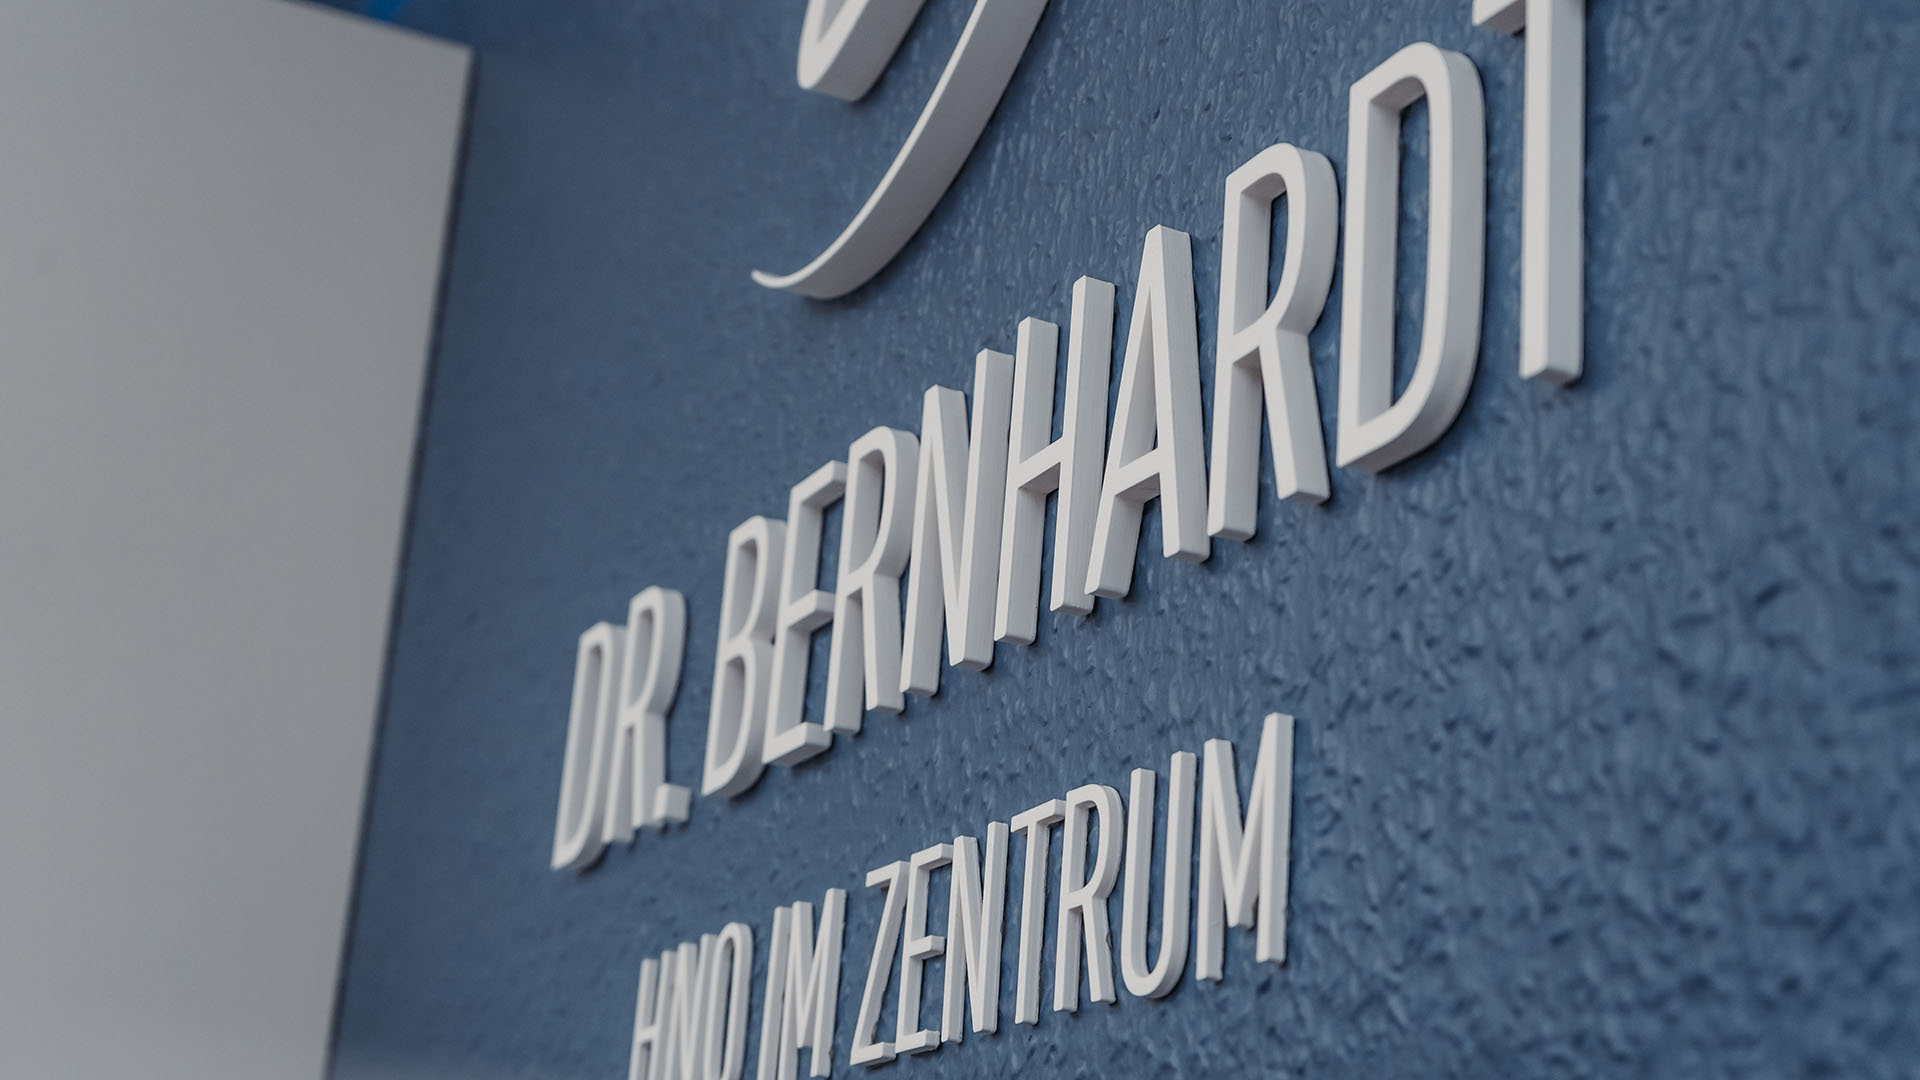 3D-Schriftzug an der Rückwand der Rezeption, der das Logo und die Wortmarke der Praxis darstellt: "Dr. Bernhardt – HNO im Zentrum"